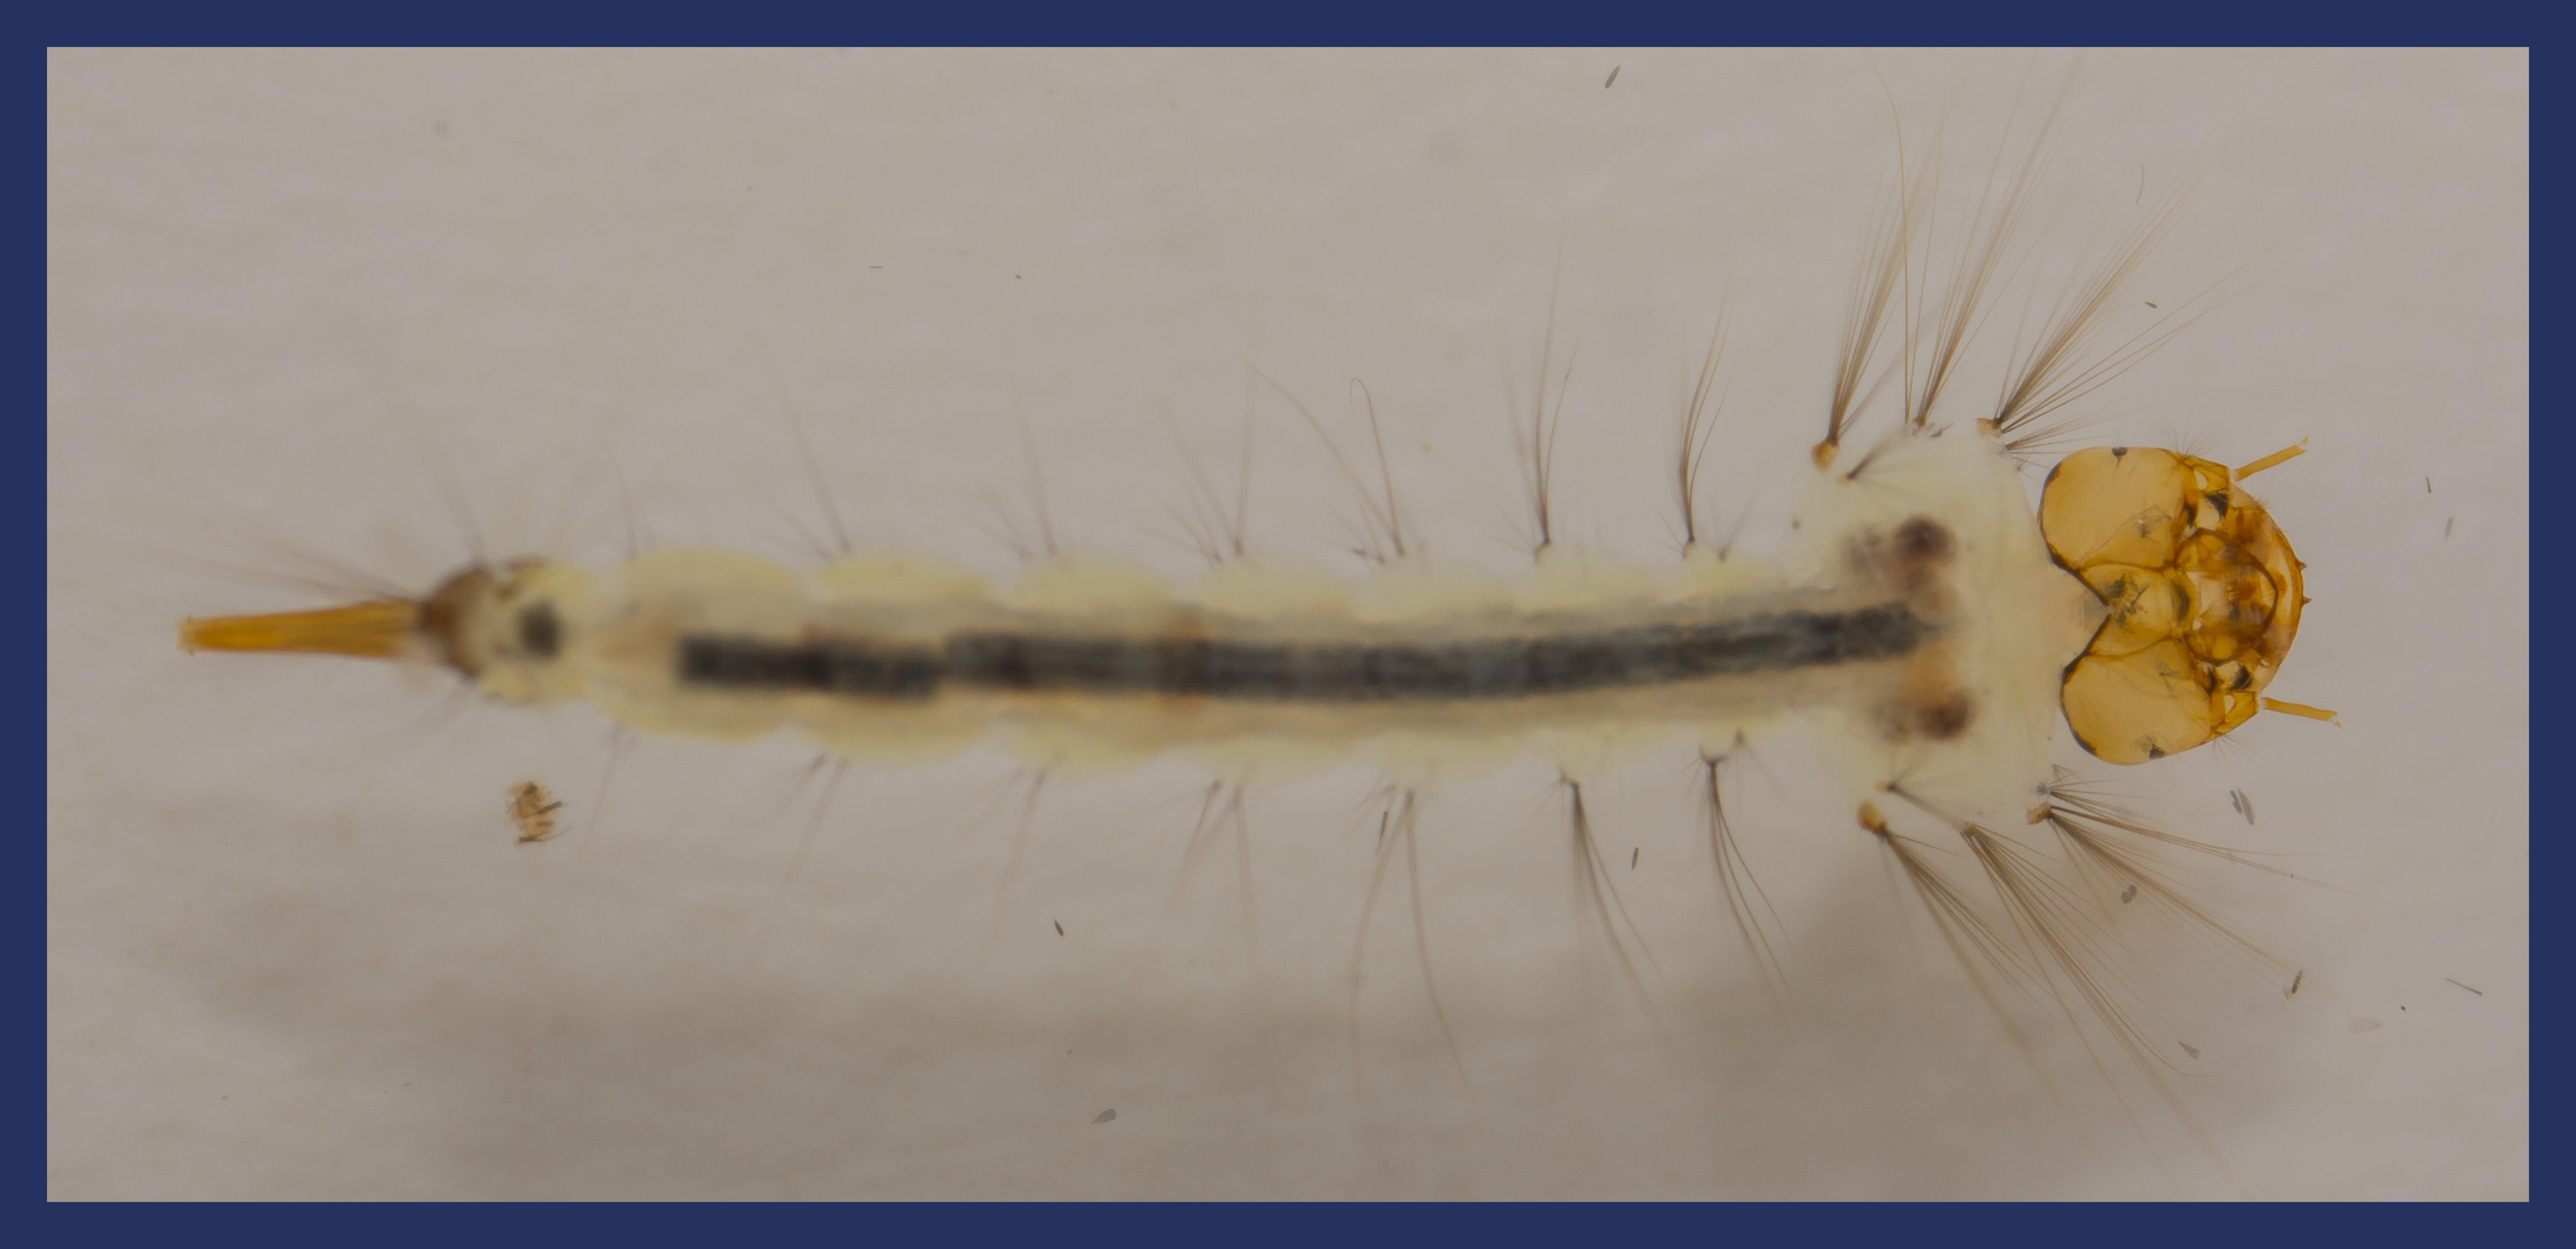 Culex quinquefasciatus larvae